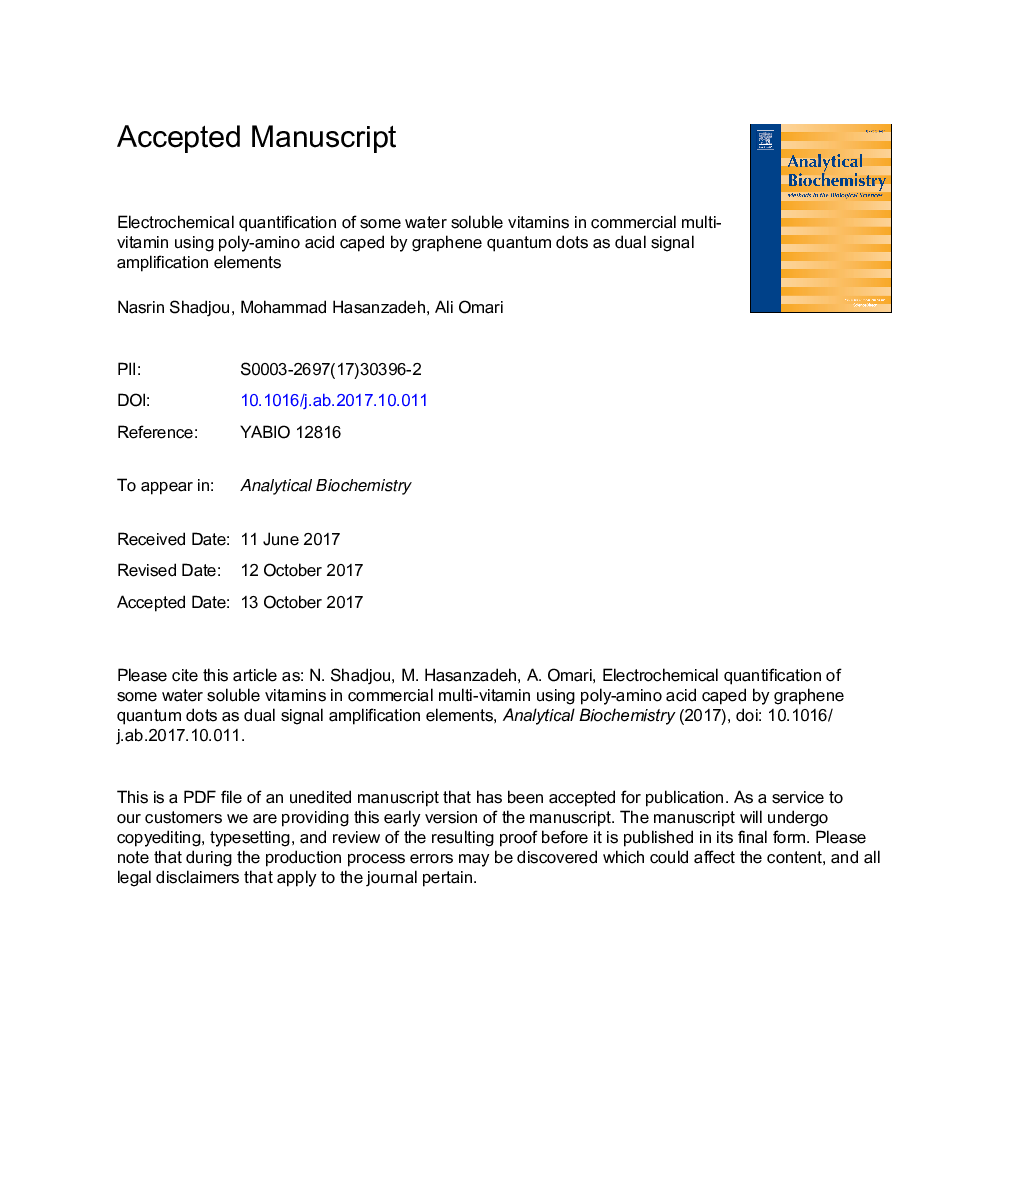 اندازه گیری الکتروشیمیایی بعضی از ویتامین های محلول در آب در چند ویتامین تجاری با استفاده از پلی آمینو اسید، توسط نانوکامپوزیت های نقطه کوانتومی گرافن به عنوان عناصر تقویت سیگنال دوگانه 